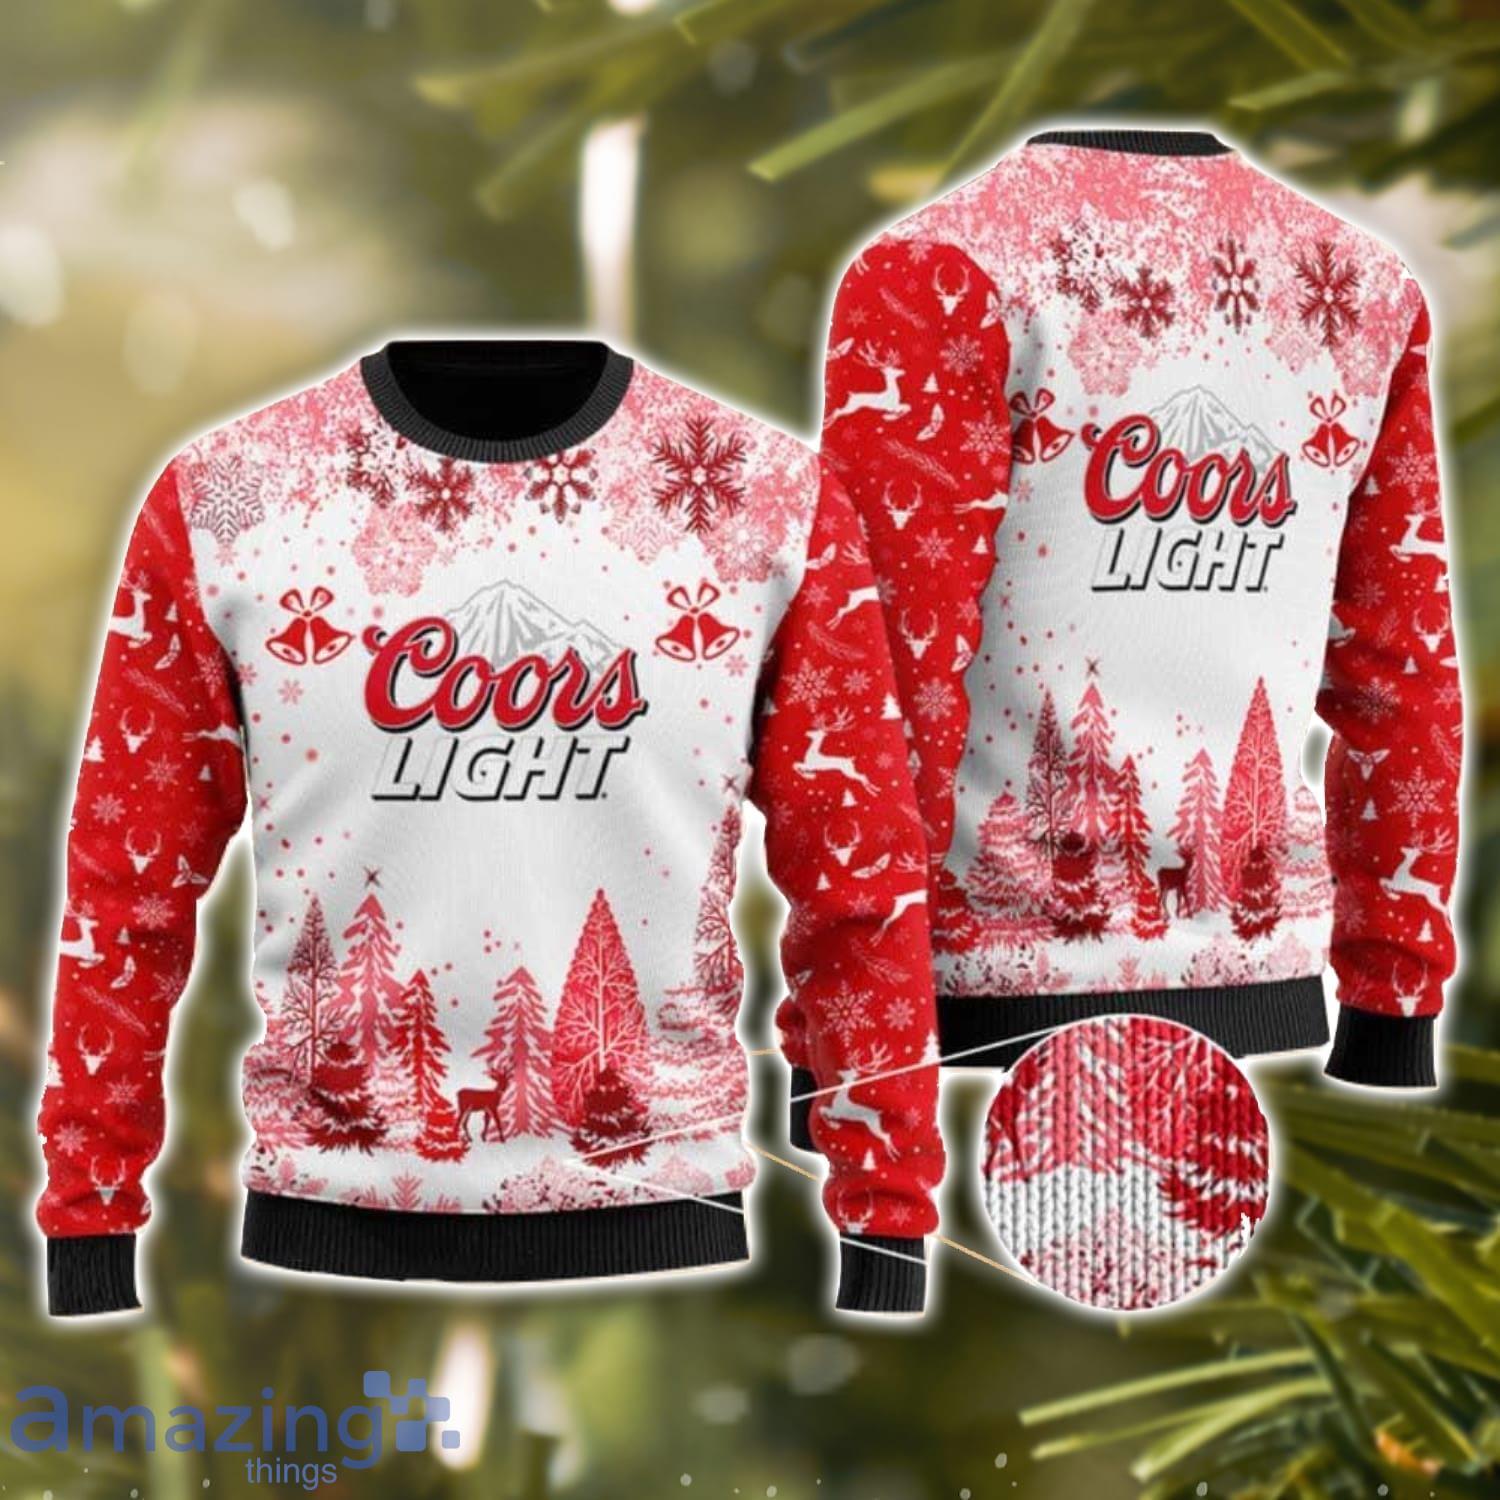 Coors Light Jingle Bells Ugly Christmas Sweater Christmas Holiday Gift